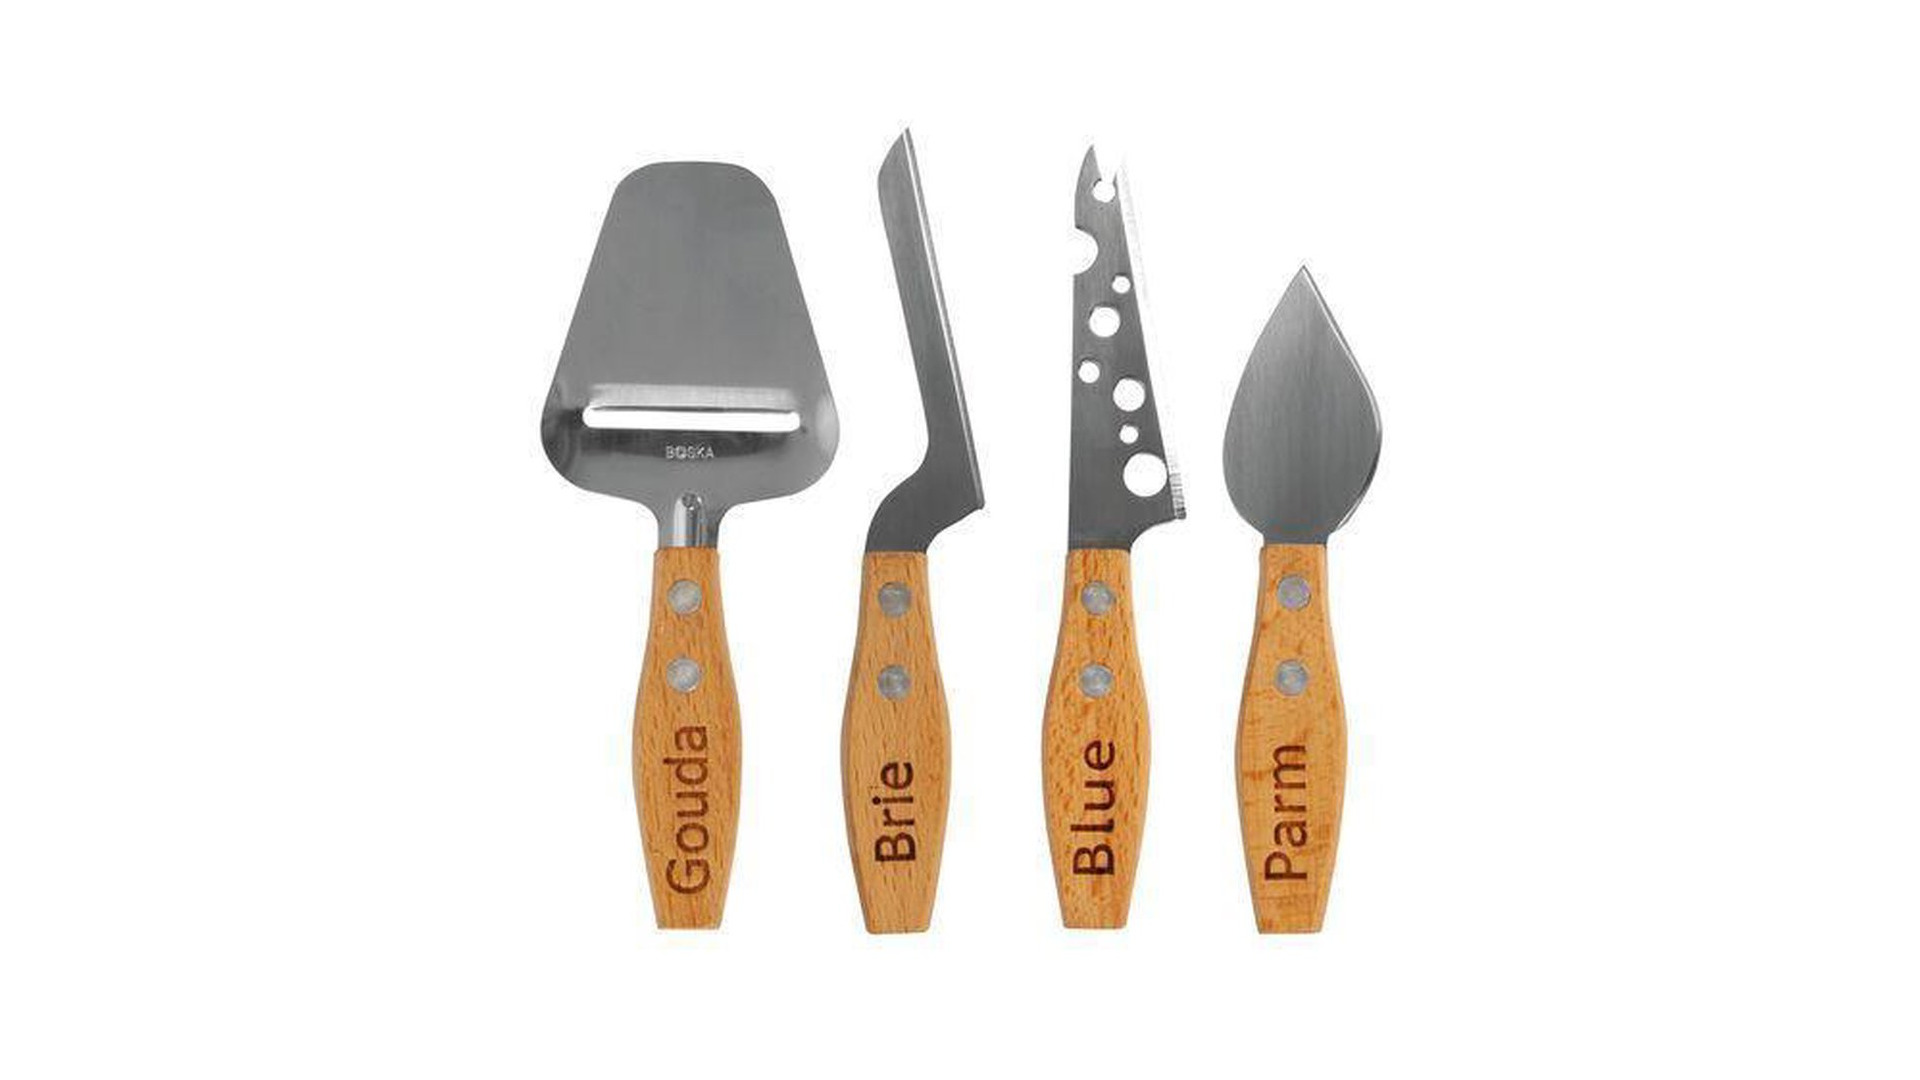 Набор мини ножей для всех видов сыра Boska Женева 15 см, 4  шт, ручка из бука, сталь, п/к